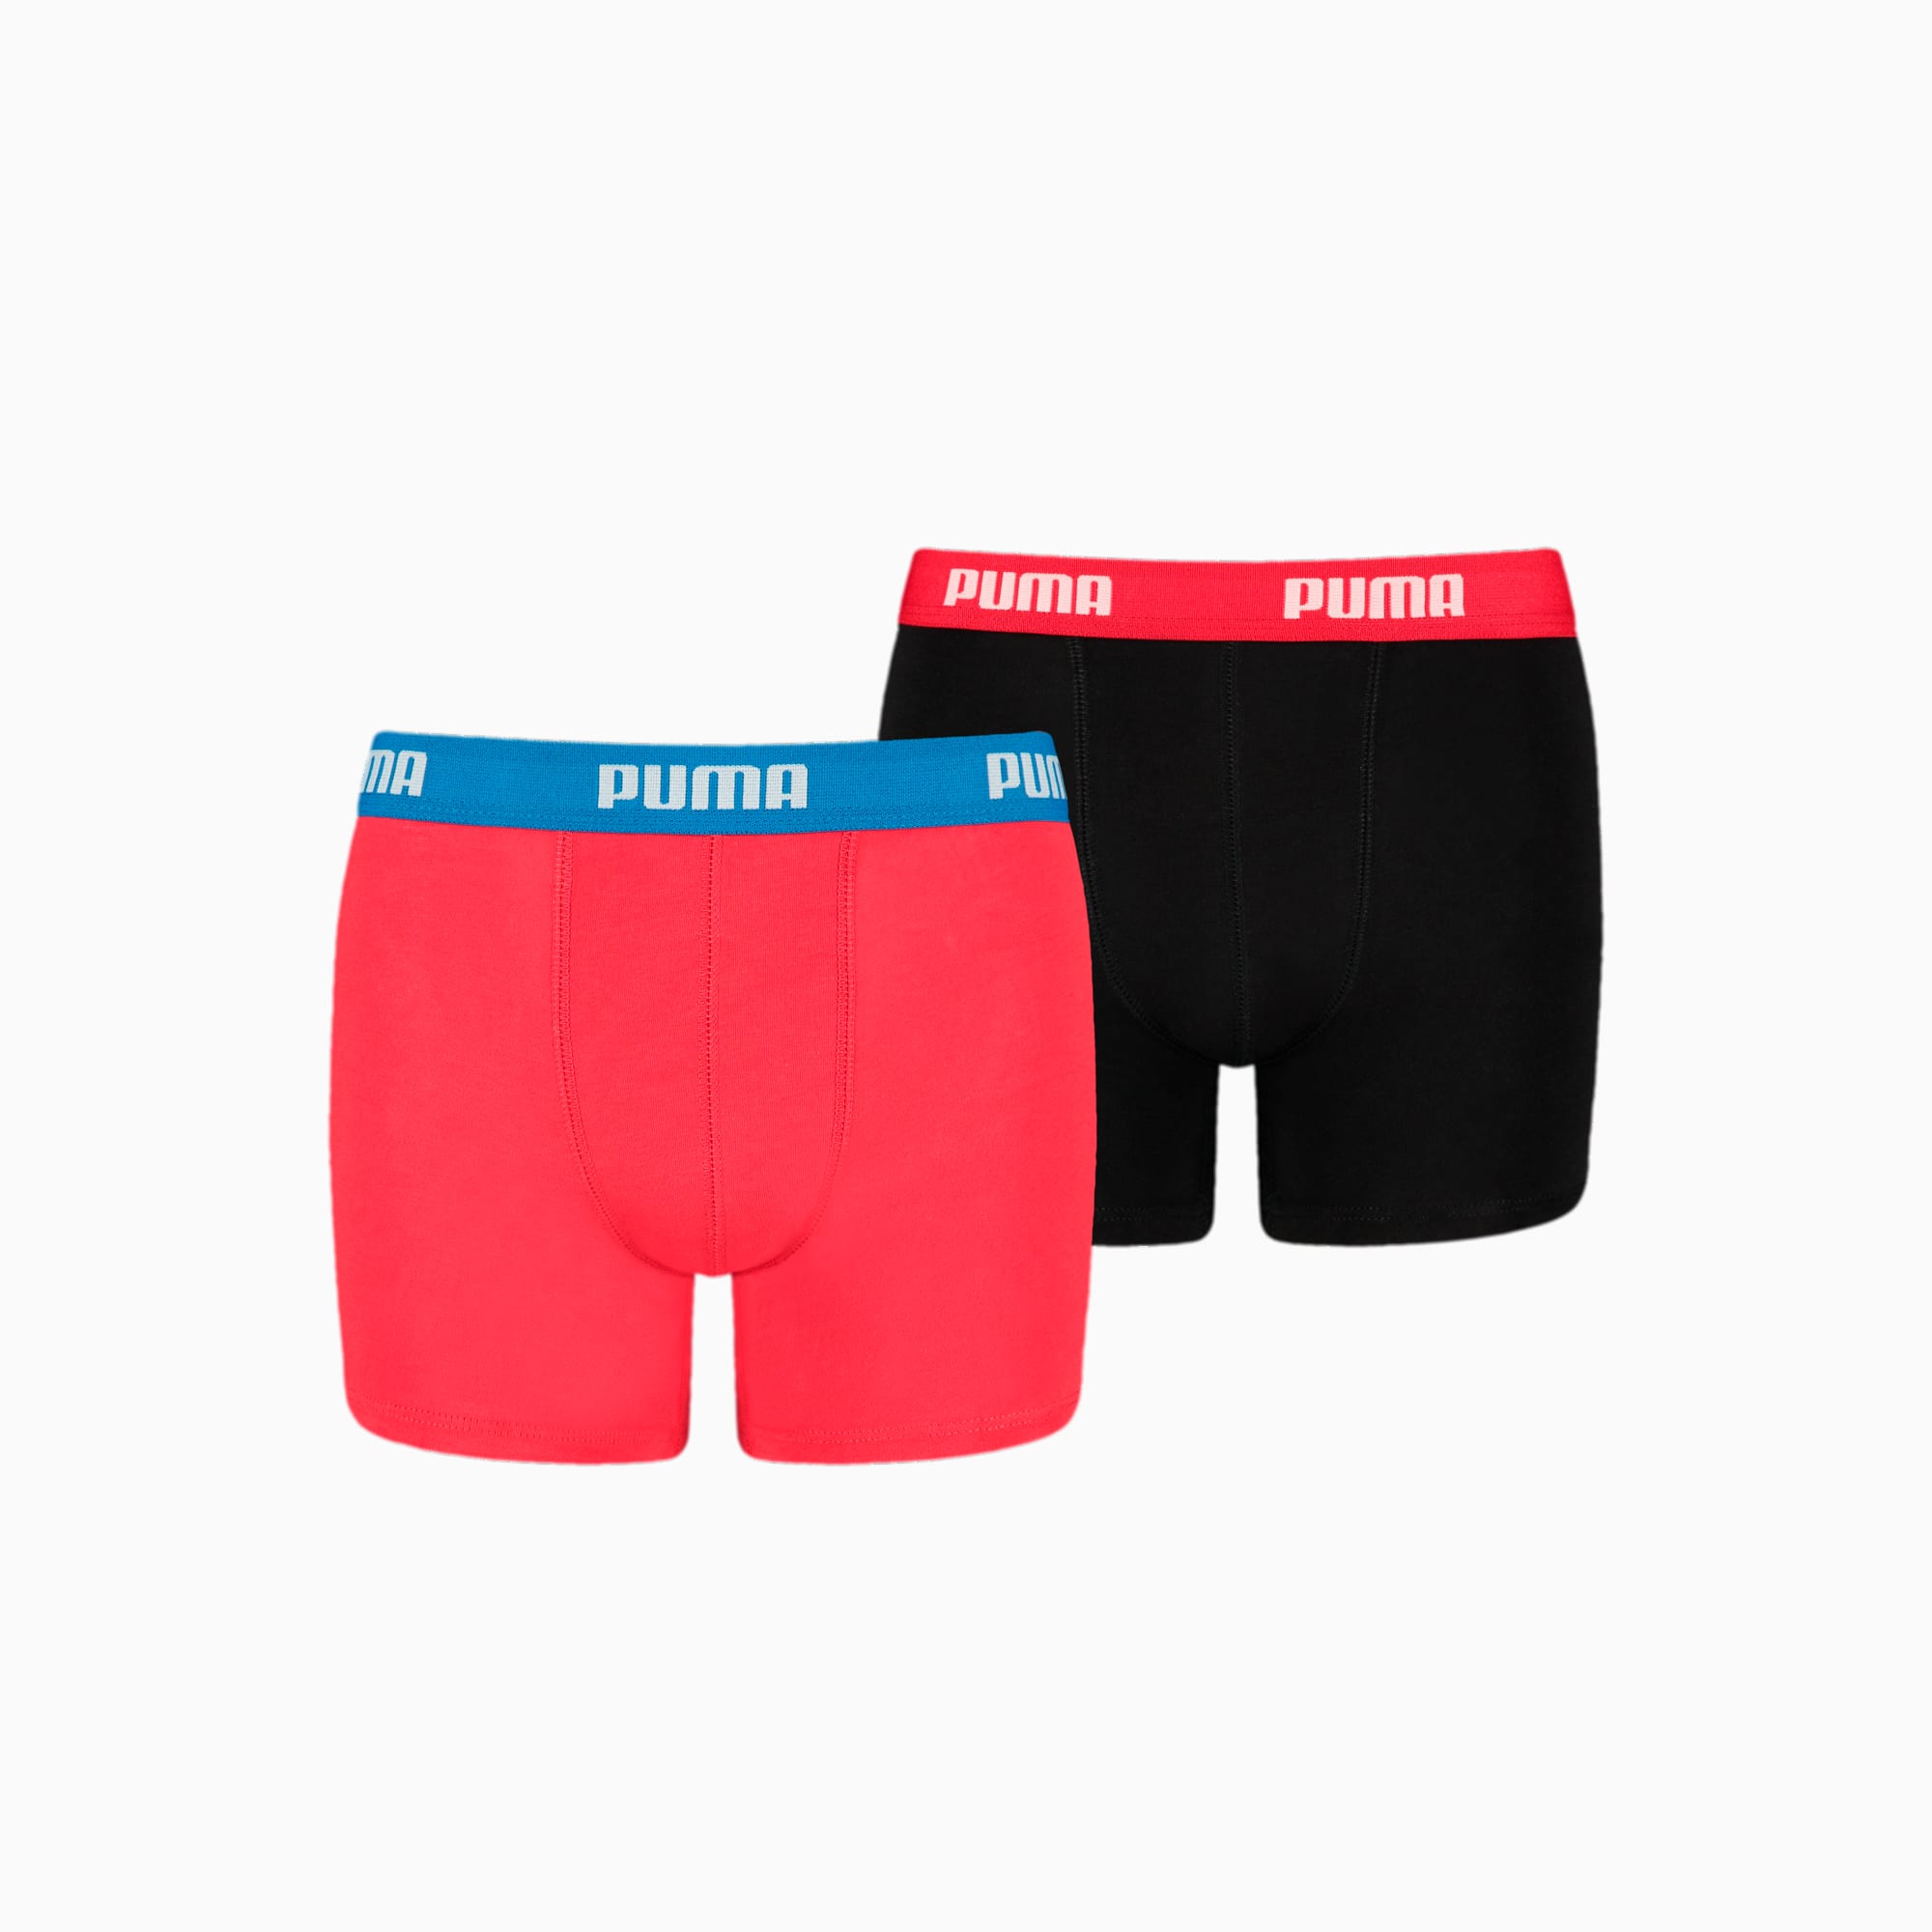 PUMA Jungen-Basic-Boxershorts 2er-Pack Für Kinder, Rot/Schwarz, Größe: 7/8, Kleidung